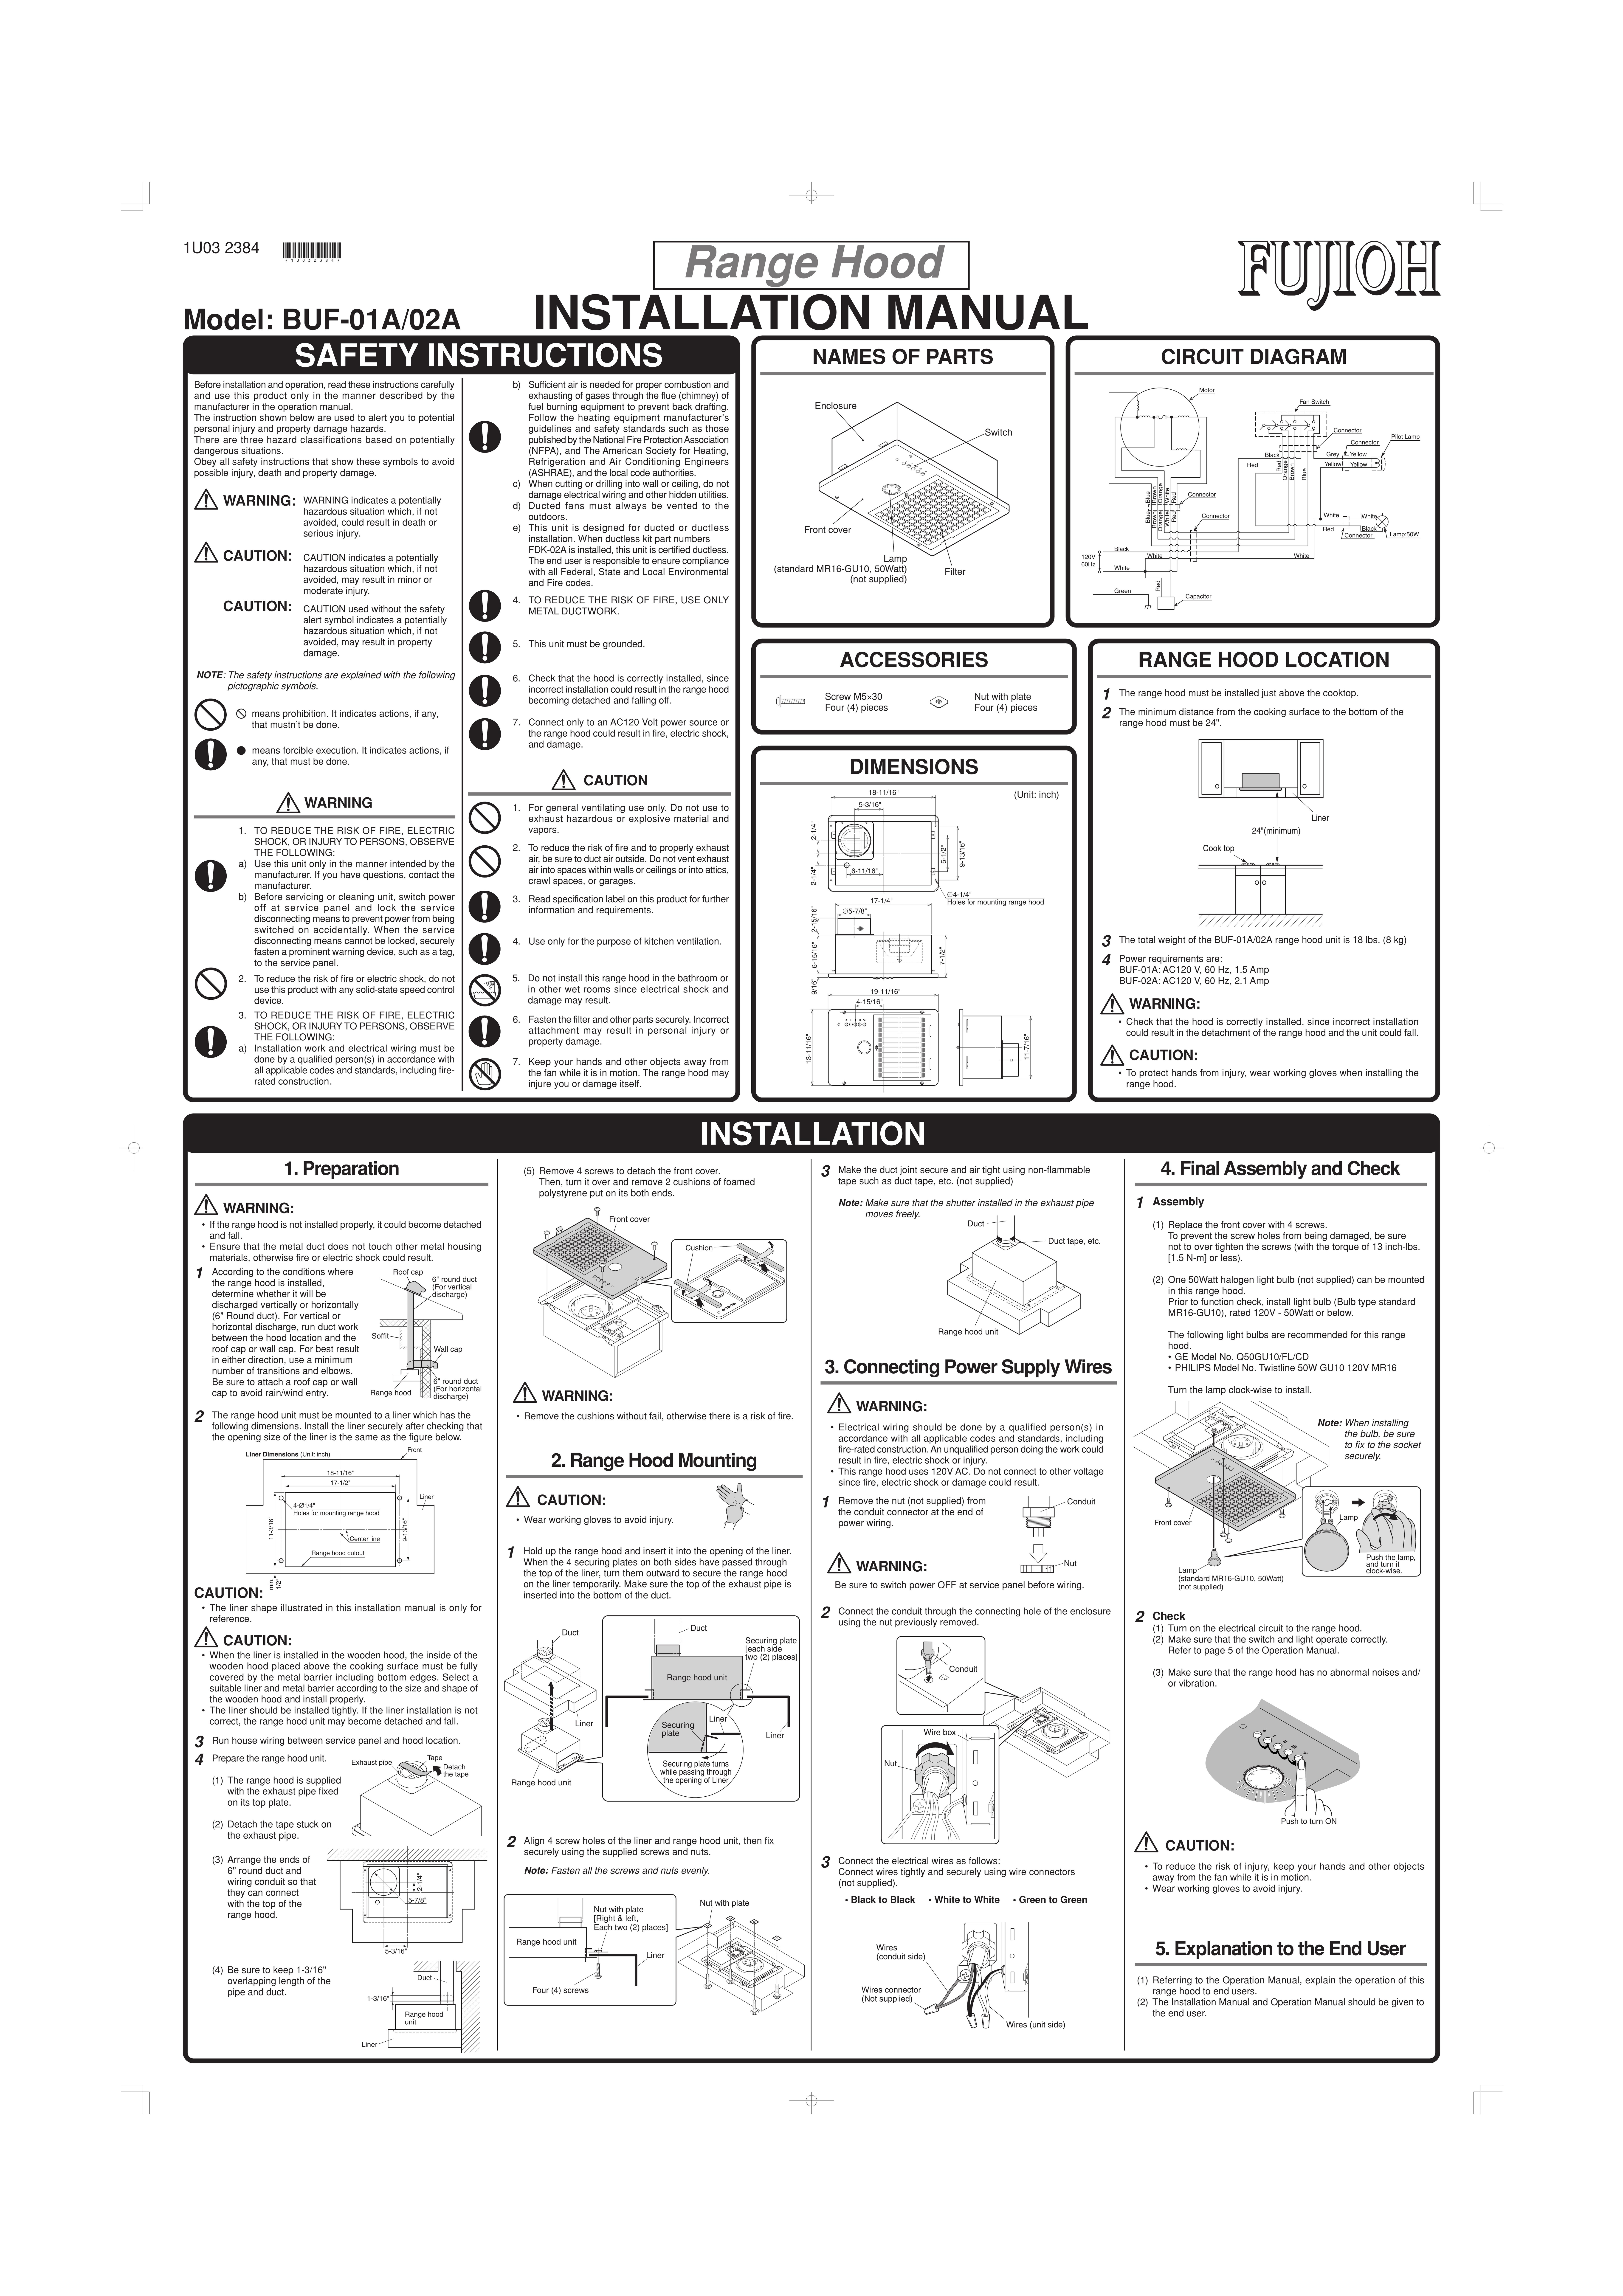 Fujioh BUF-01A/02A Ventilation Hood User Manual